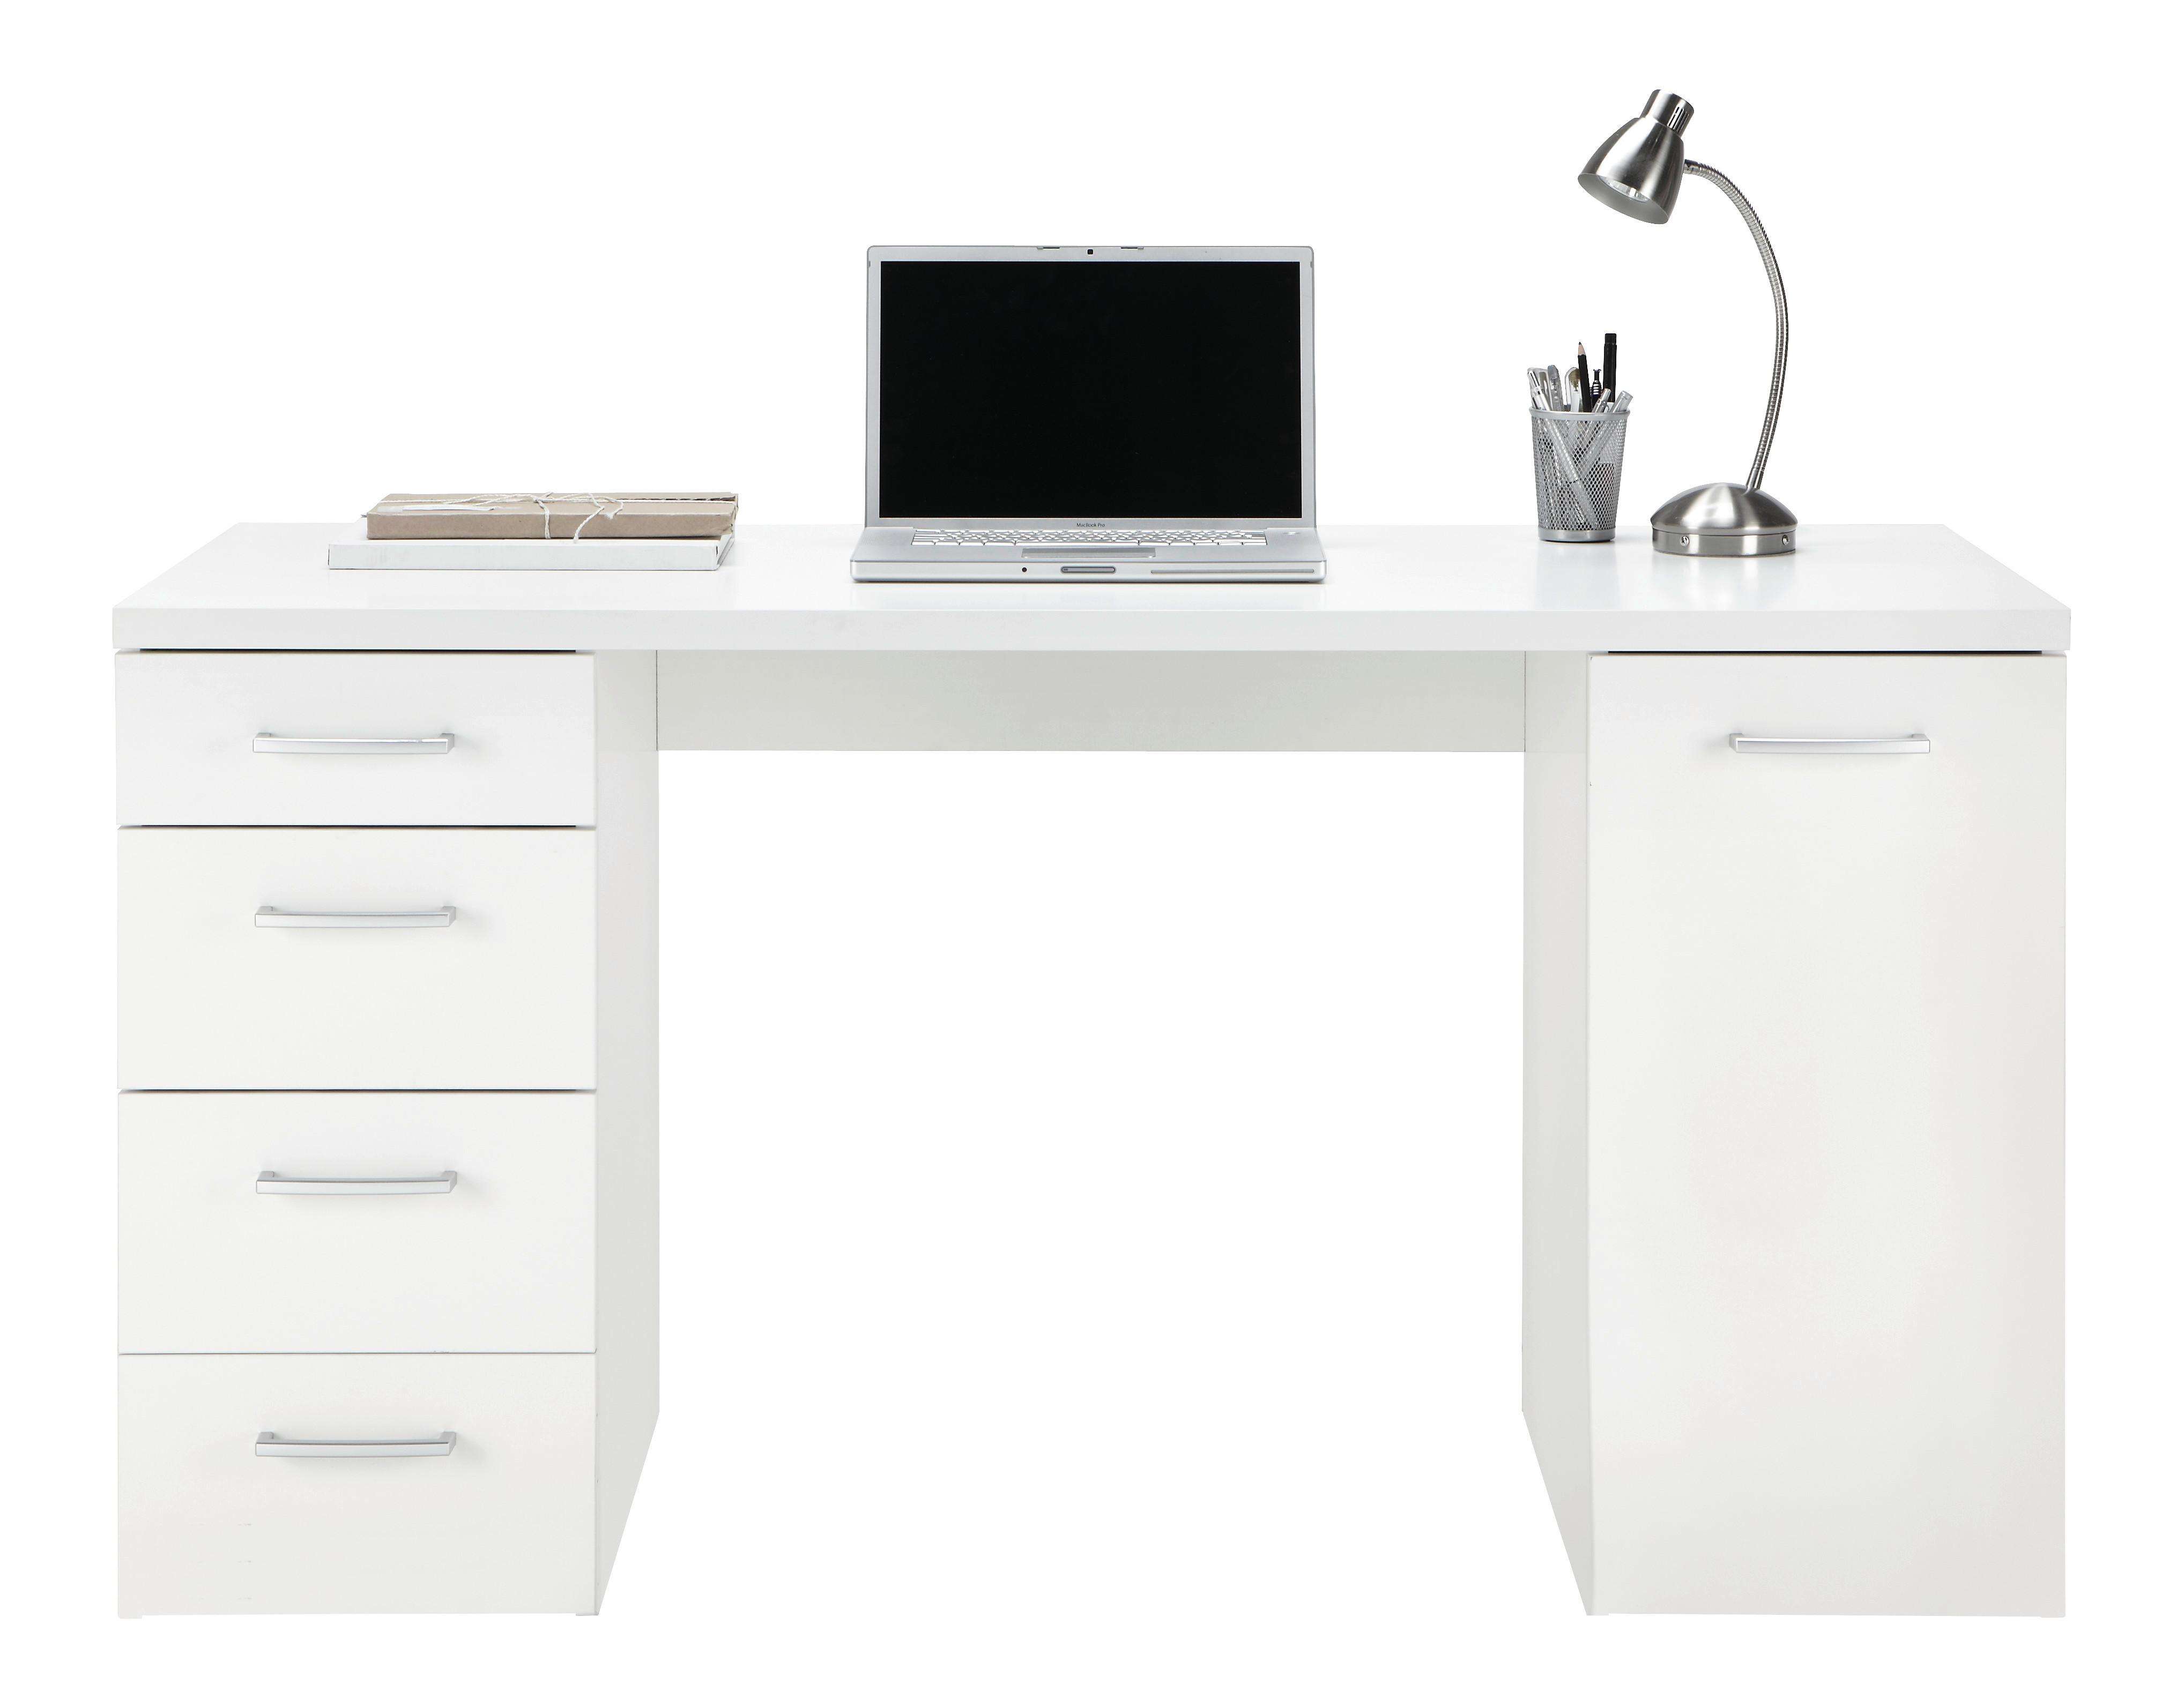 Schreibtisch in Weiss - Weiss/Alufarben, Konventionell, Kunststoff (139/74/60cm) - Modern Living